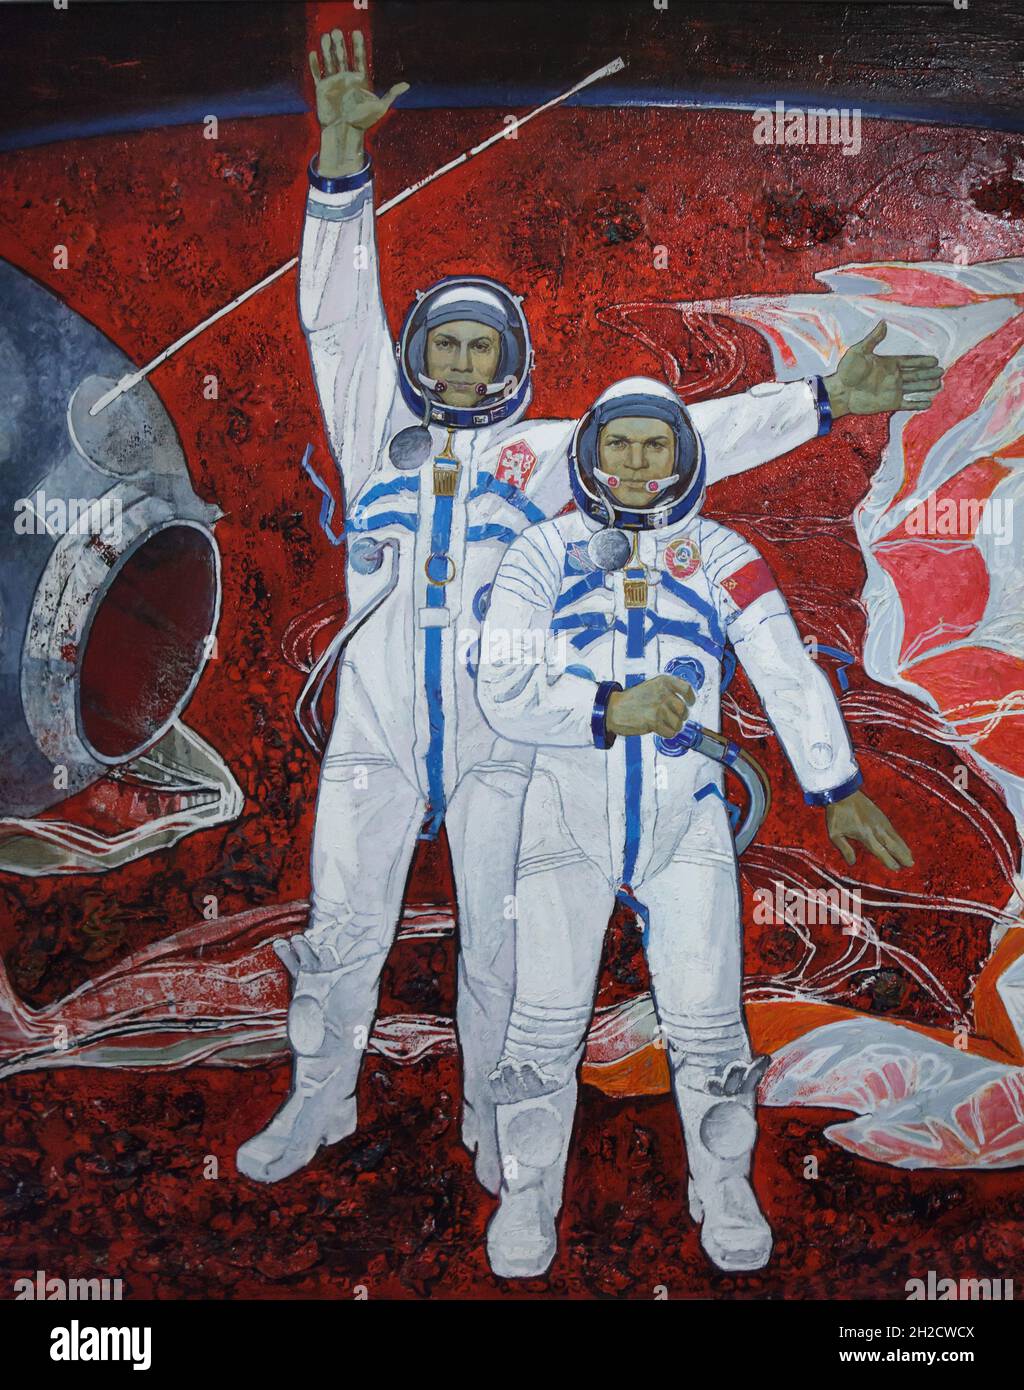 Le cosmonaute tchécoslovaque Vladimír Remek (L) et le cosmonaute soviétique Alexei Gubarov (R) représentés dans le détail de la peinture du cosmonaute soviétique Alexei Leanov (1981) exposée au Musée national (Národní muzeum) à Prague (République tchèque).Vladimír Remek et Alexei Gubarov étaient les membres de l'équipage de la mission soviétique de 1978 'Soyuz 28'.Les cosmonautes sont représentés peu après l'atterrissage dans la steppe kazakhe près de la ville d'Arkalyk au Kazakhstan le 10 mars 1978.La peinture est en vue de la nouvelle exposition permanente du Musée national consacrée à l'histoire du XXe siècle. Banque D'Images